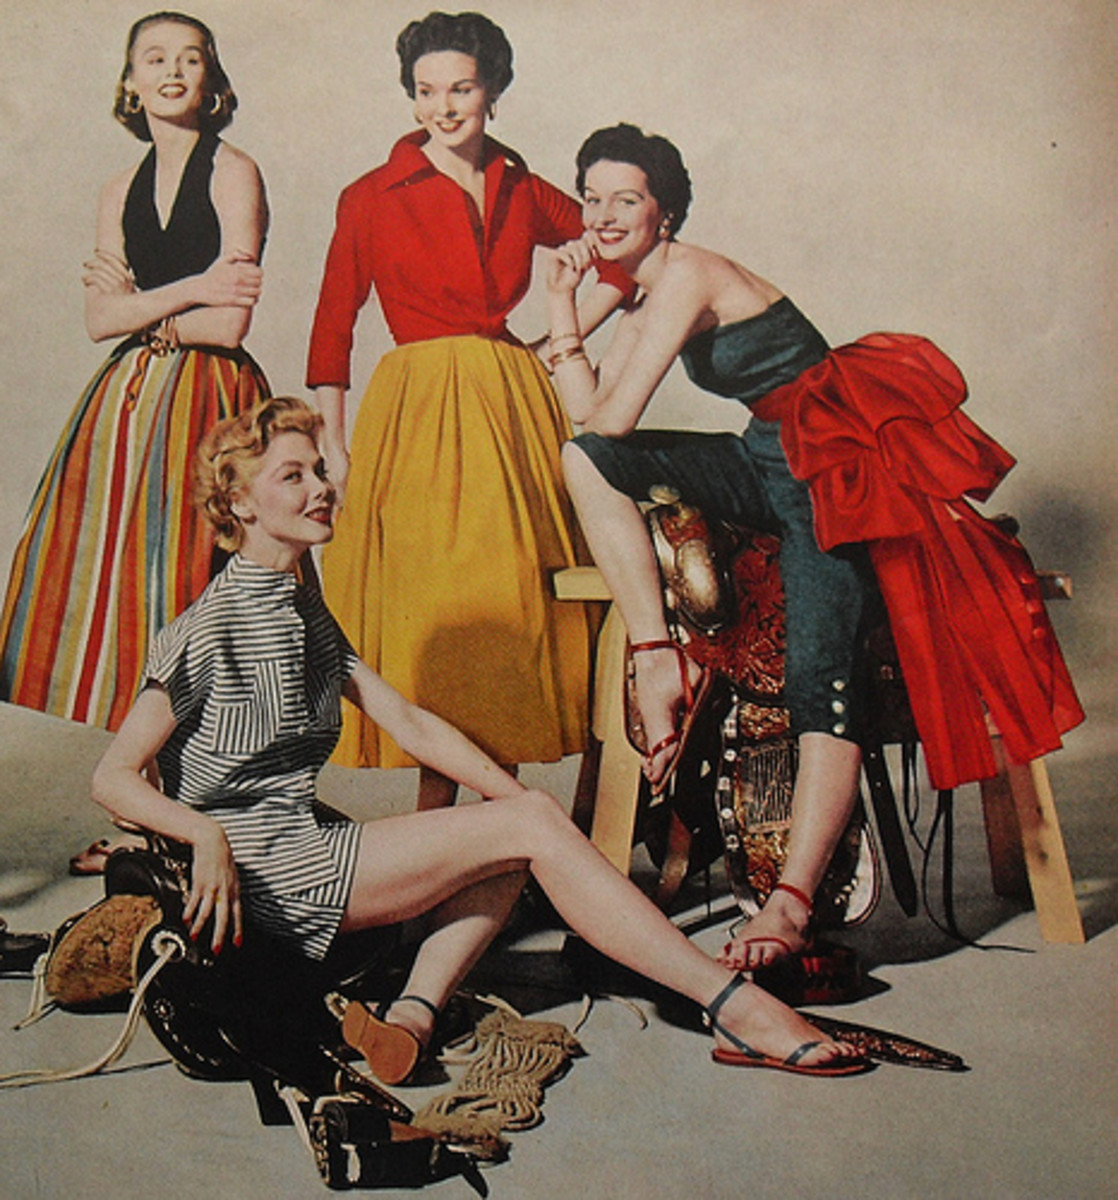 Stylish 1950's women